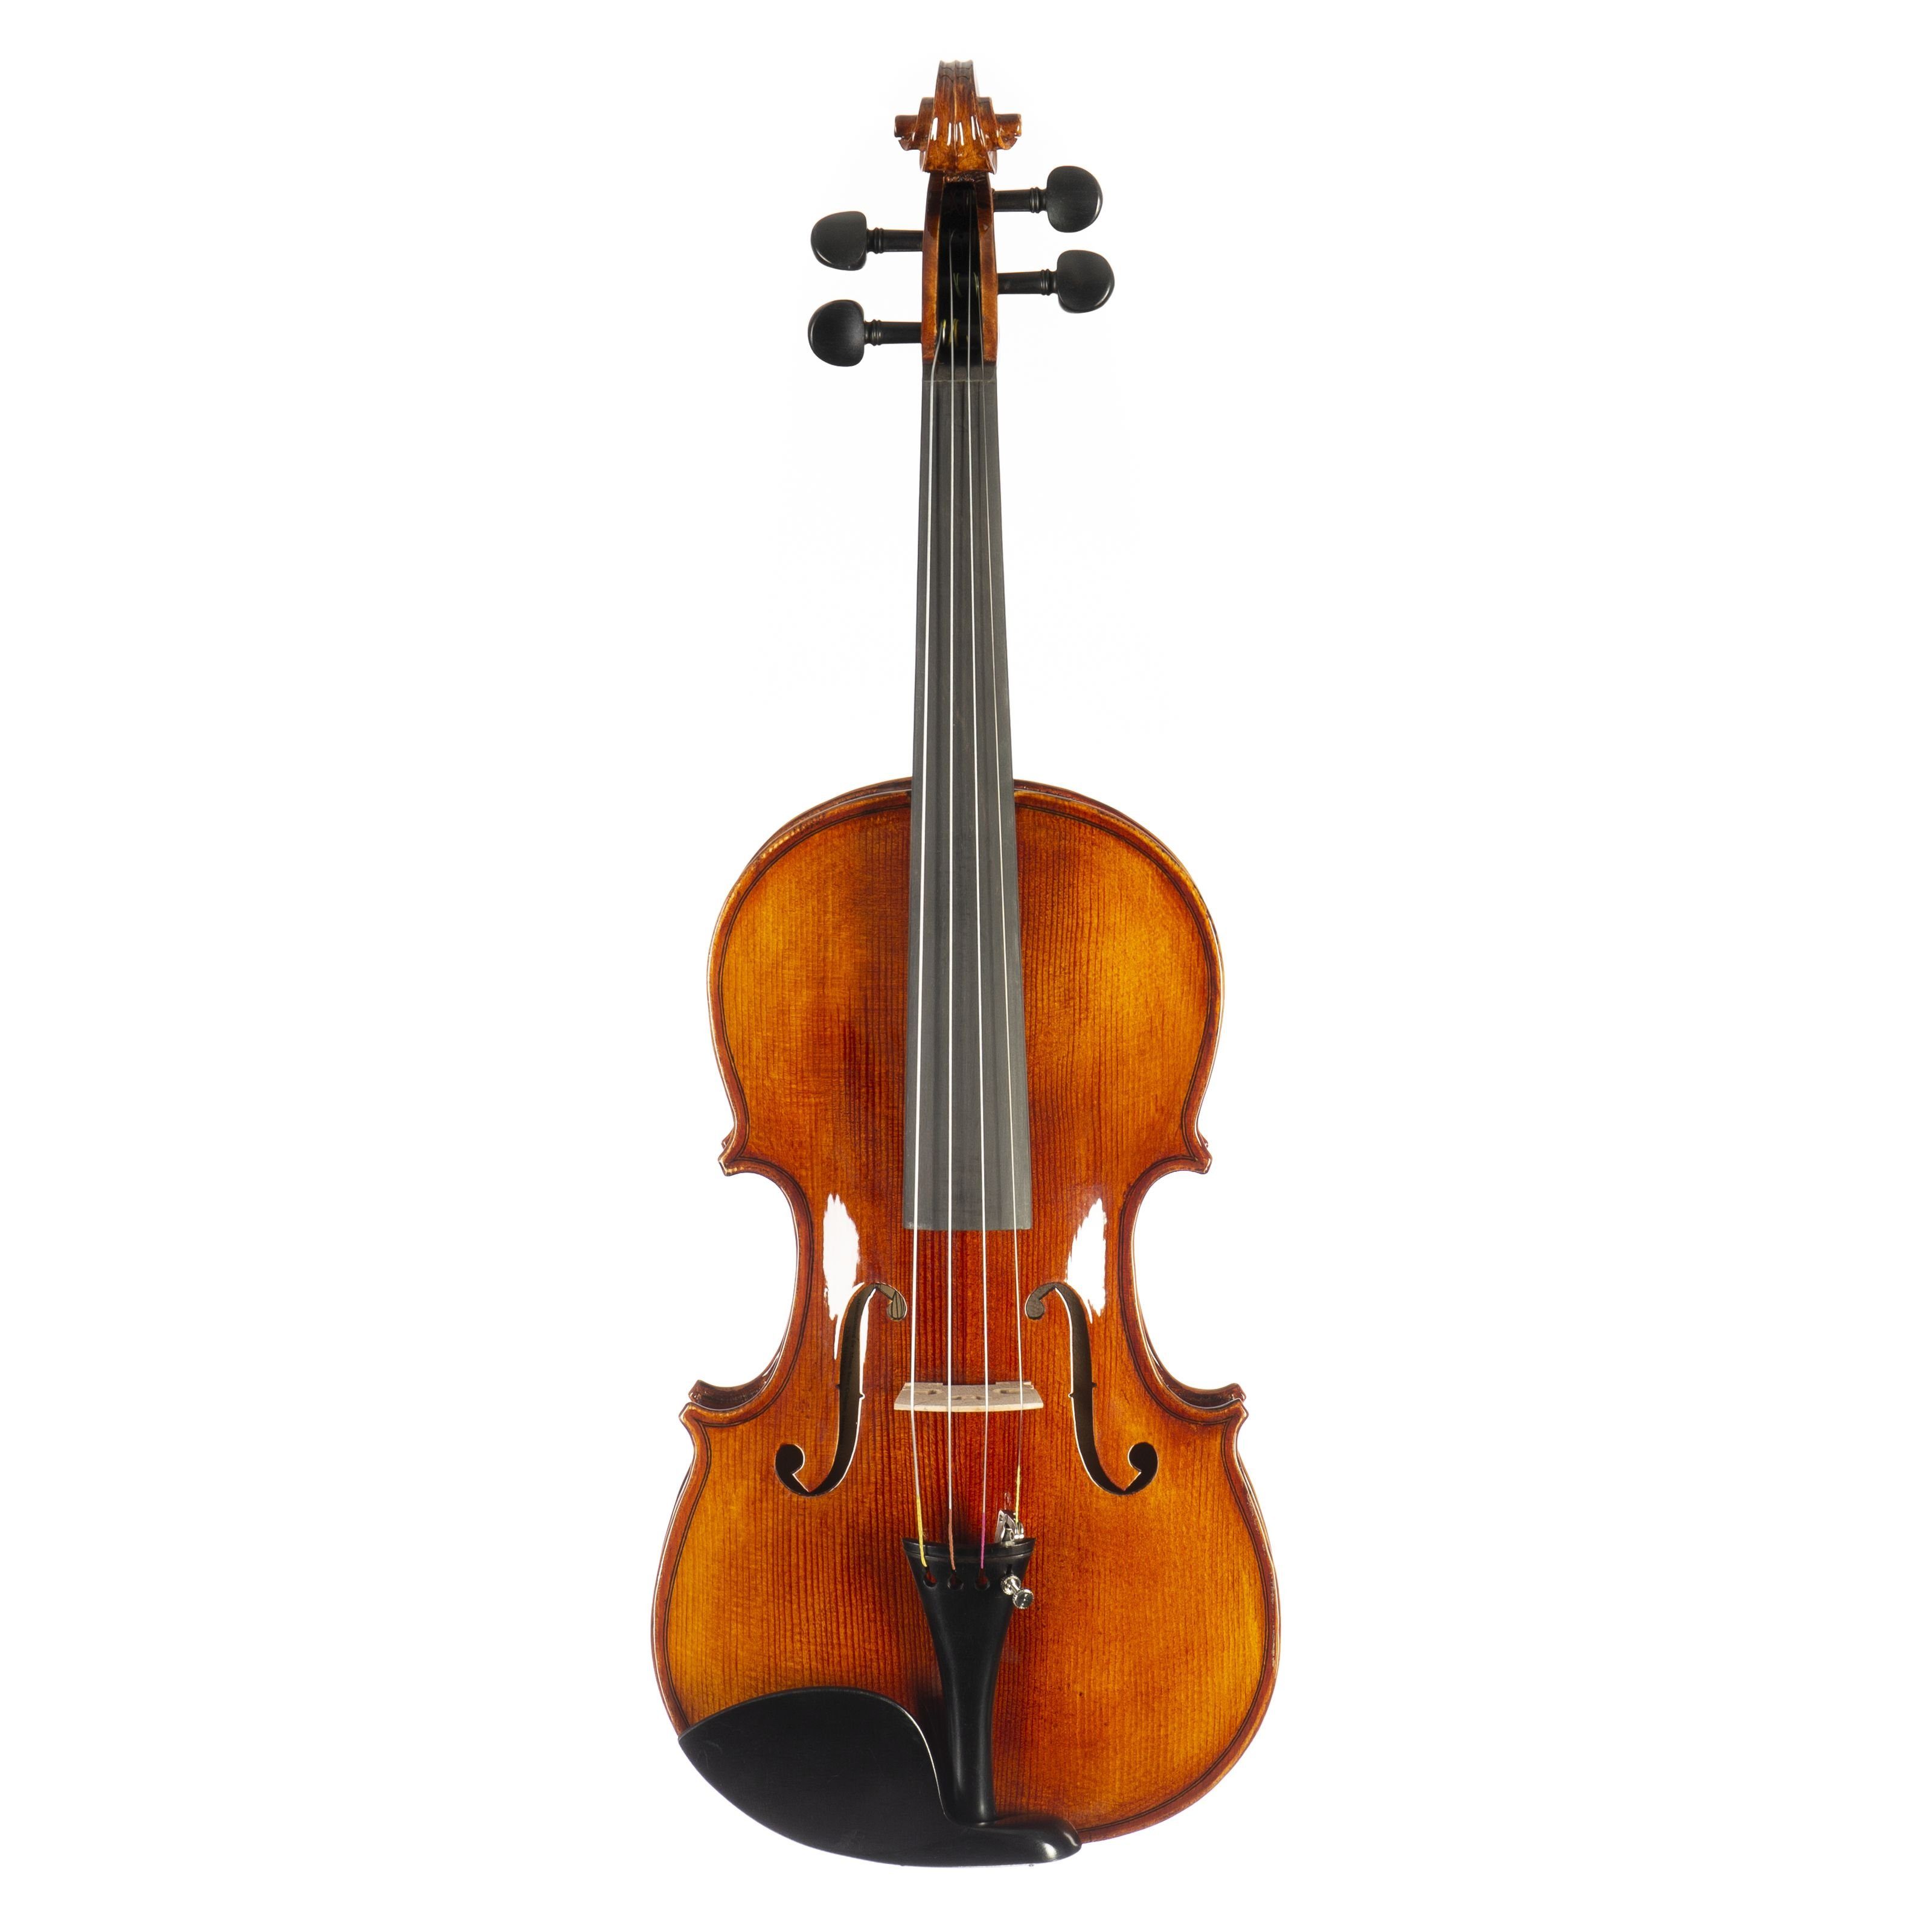 FAME Violine, Violinen / Geigen, Akustische Violinen, FVN-118 Violine 4/4 - Violine